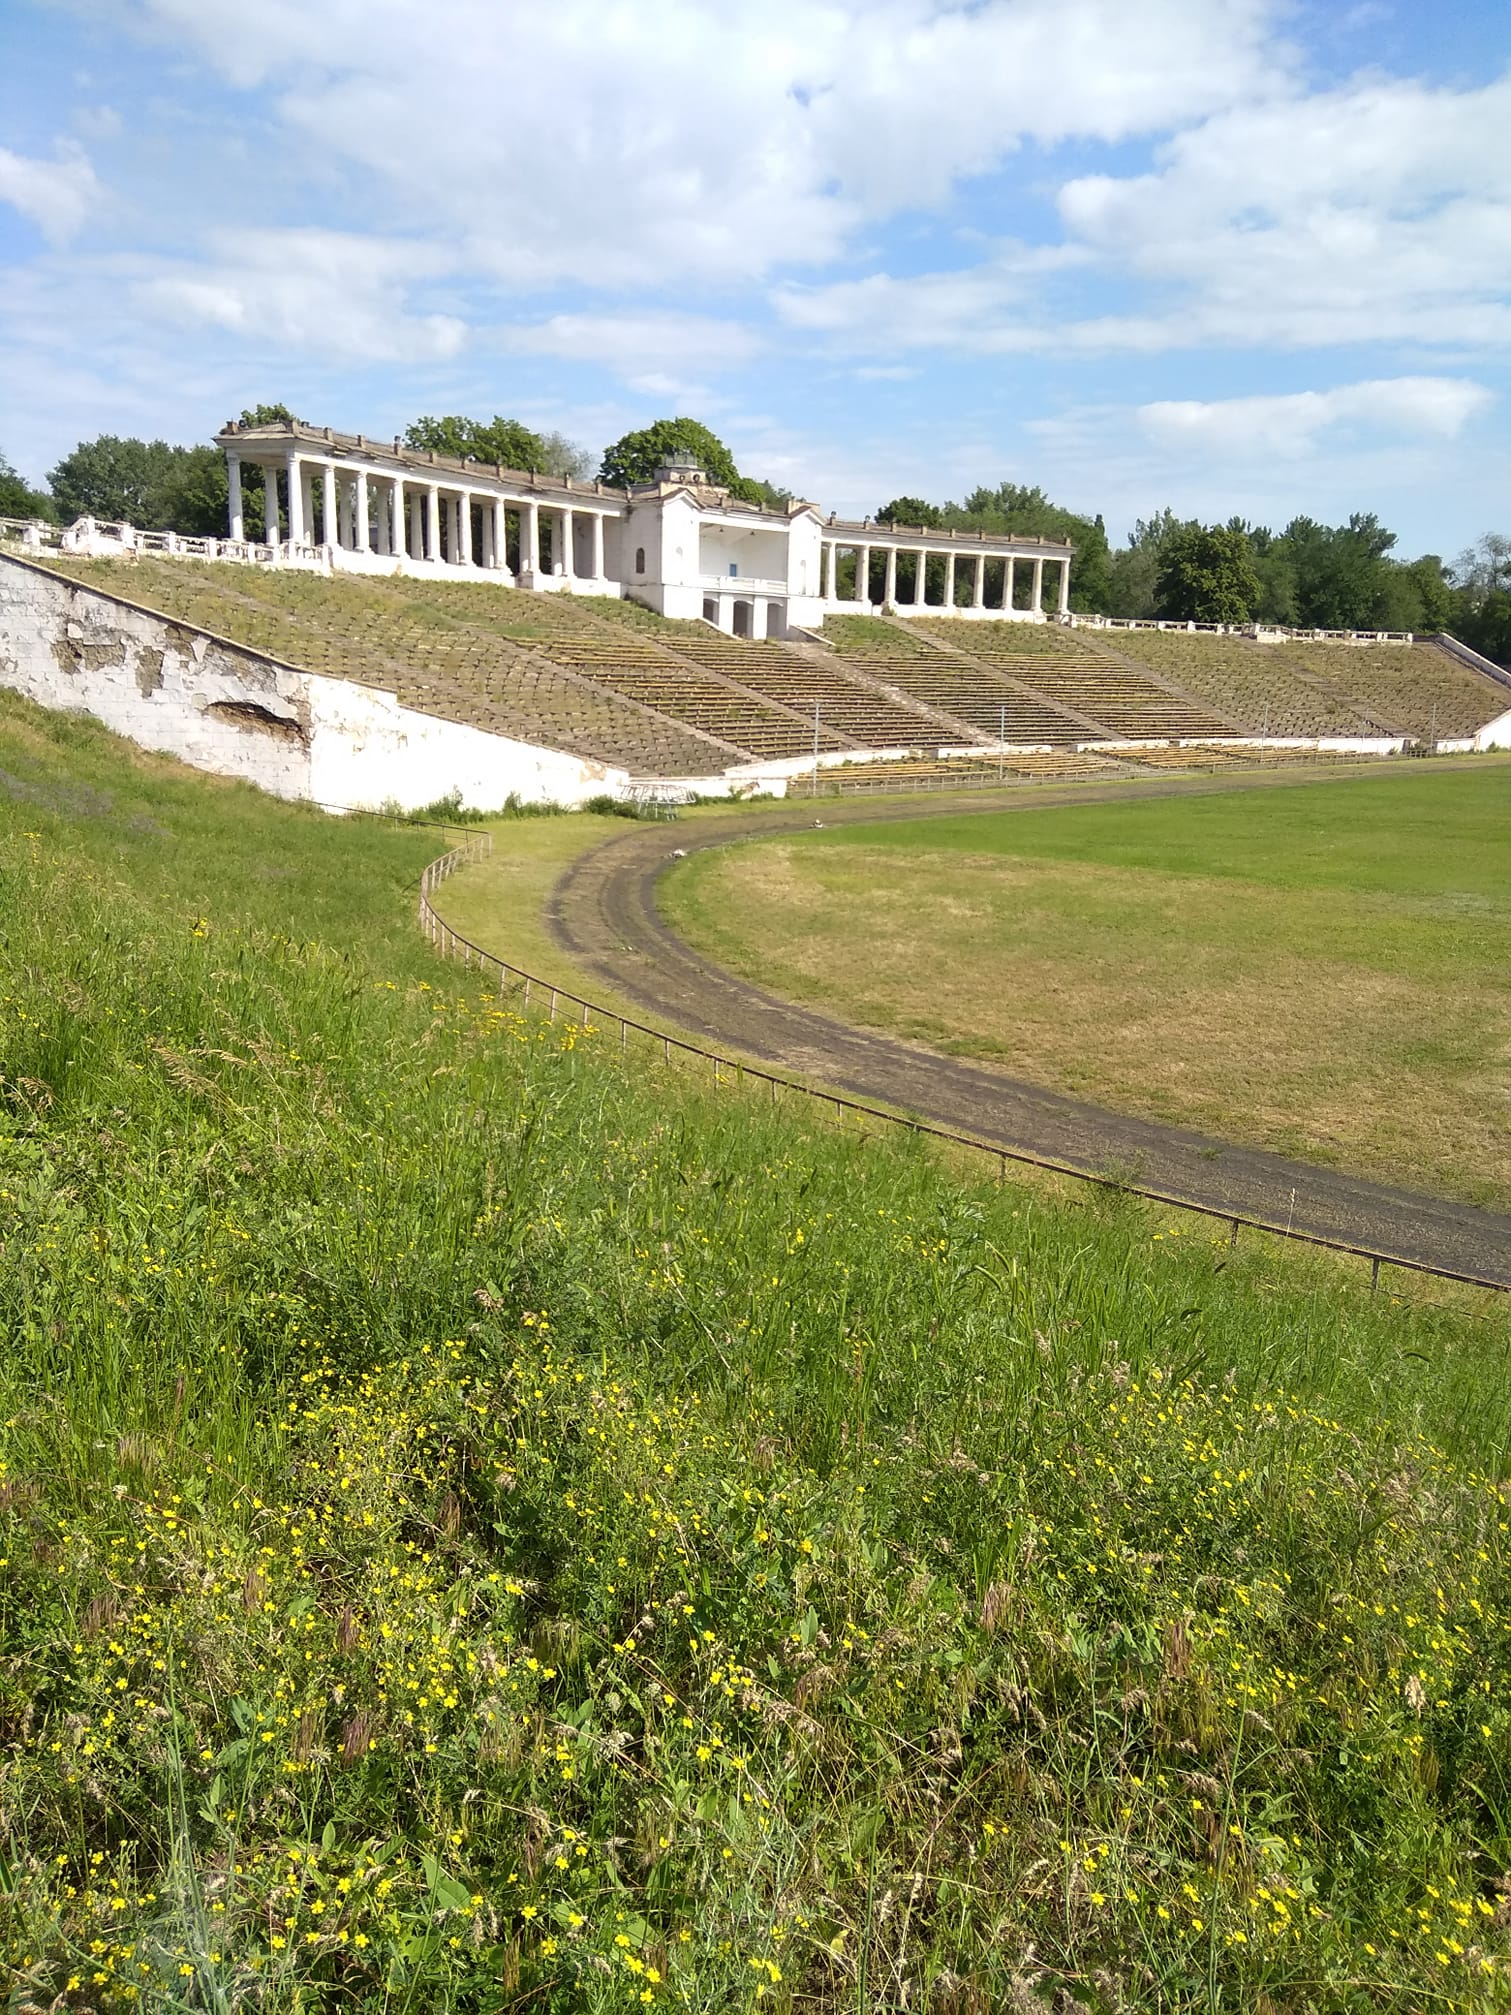 Так выглядит стадион в парке Шахтерский в наши дни